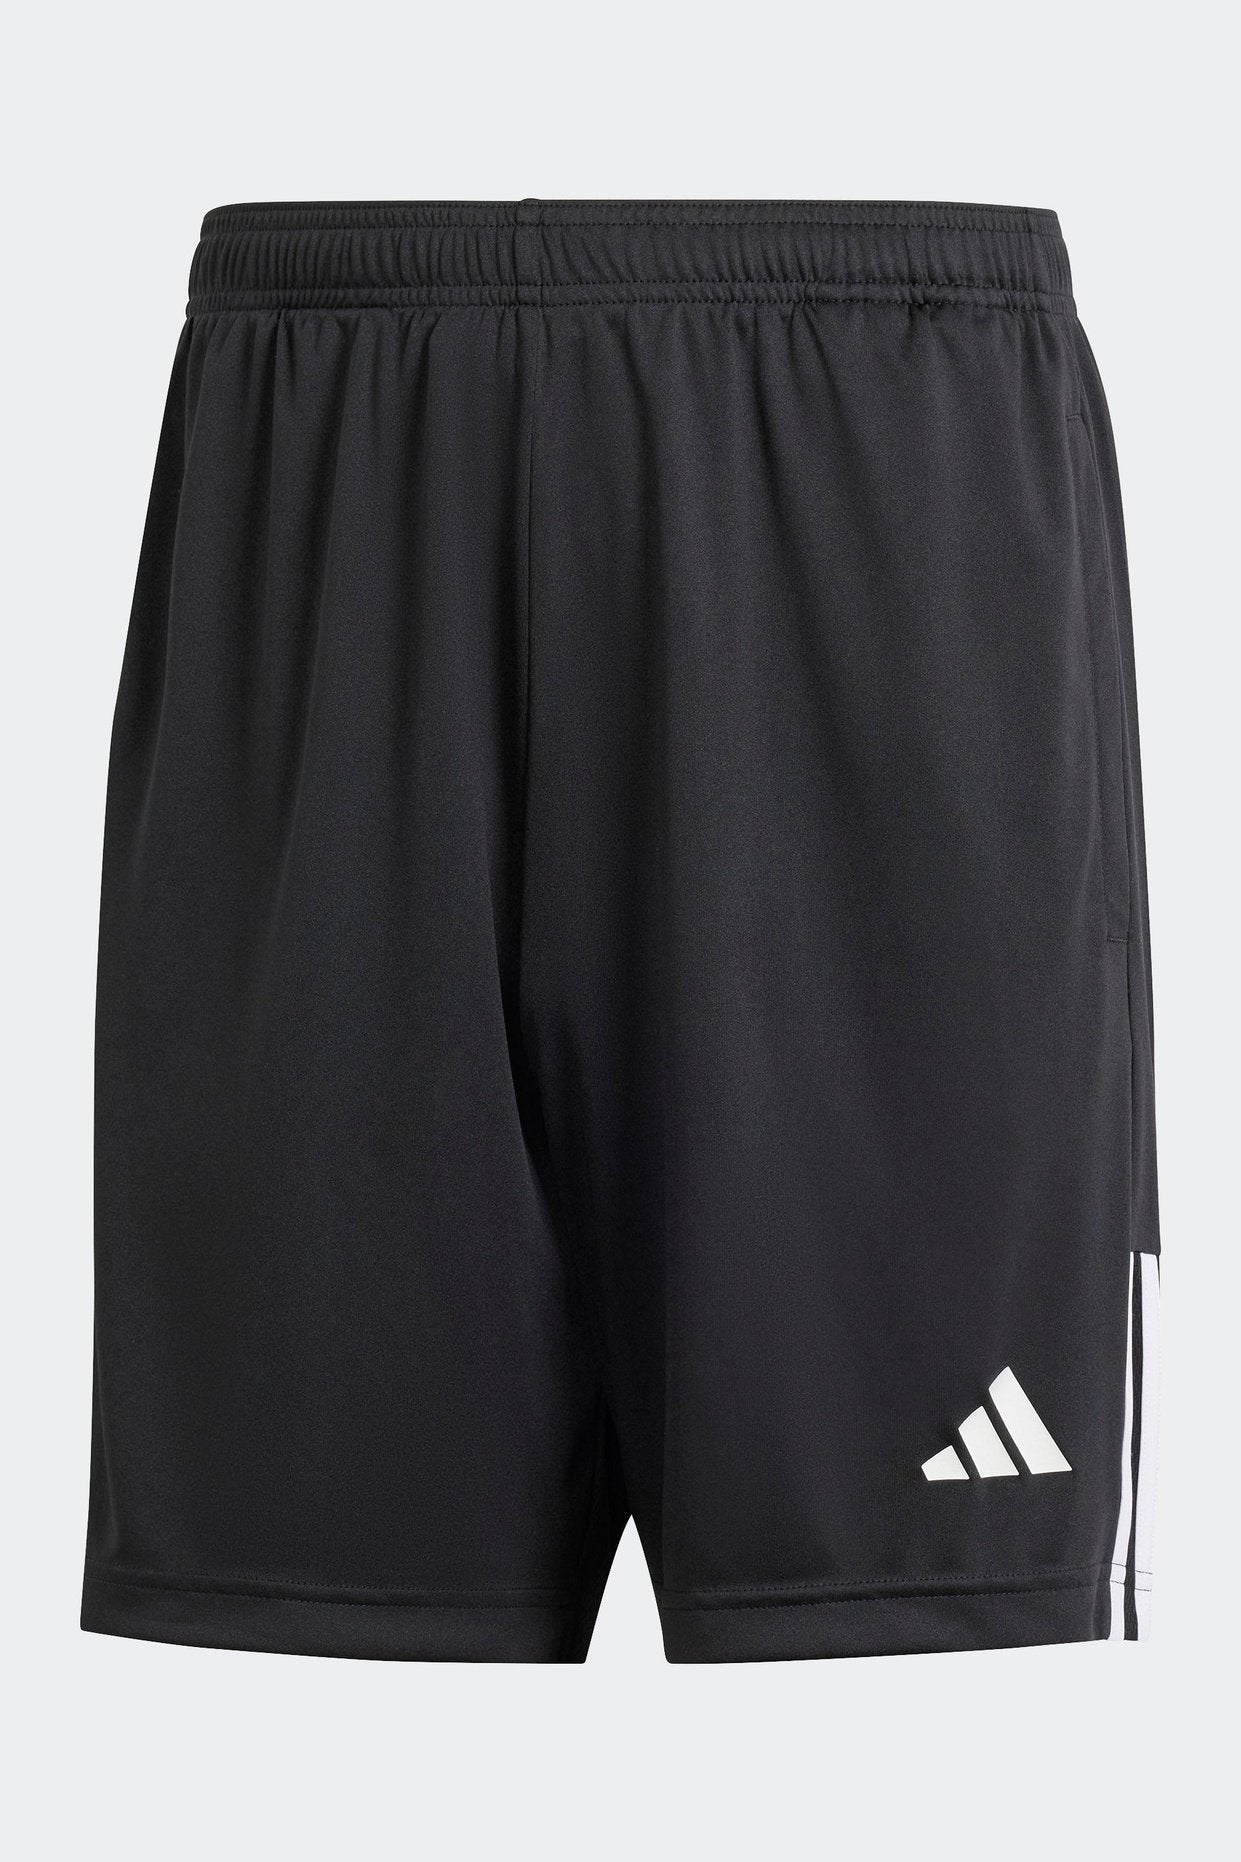 מכנסיים קצרים לגברים SERENO AEROREADY CUT 3-STRIPES בצבע שחור ולבן